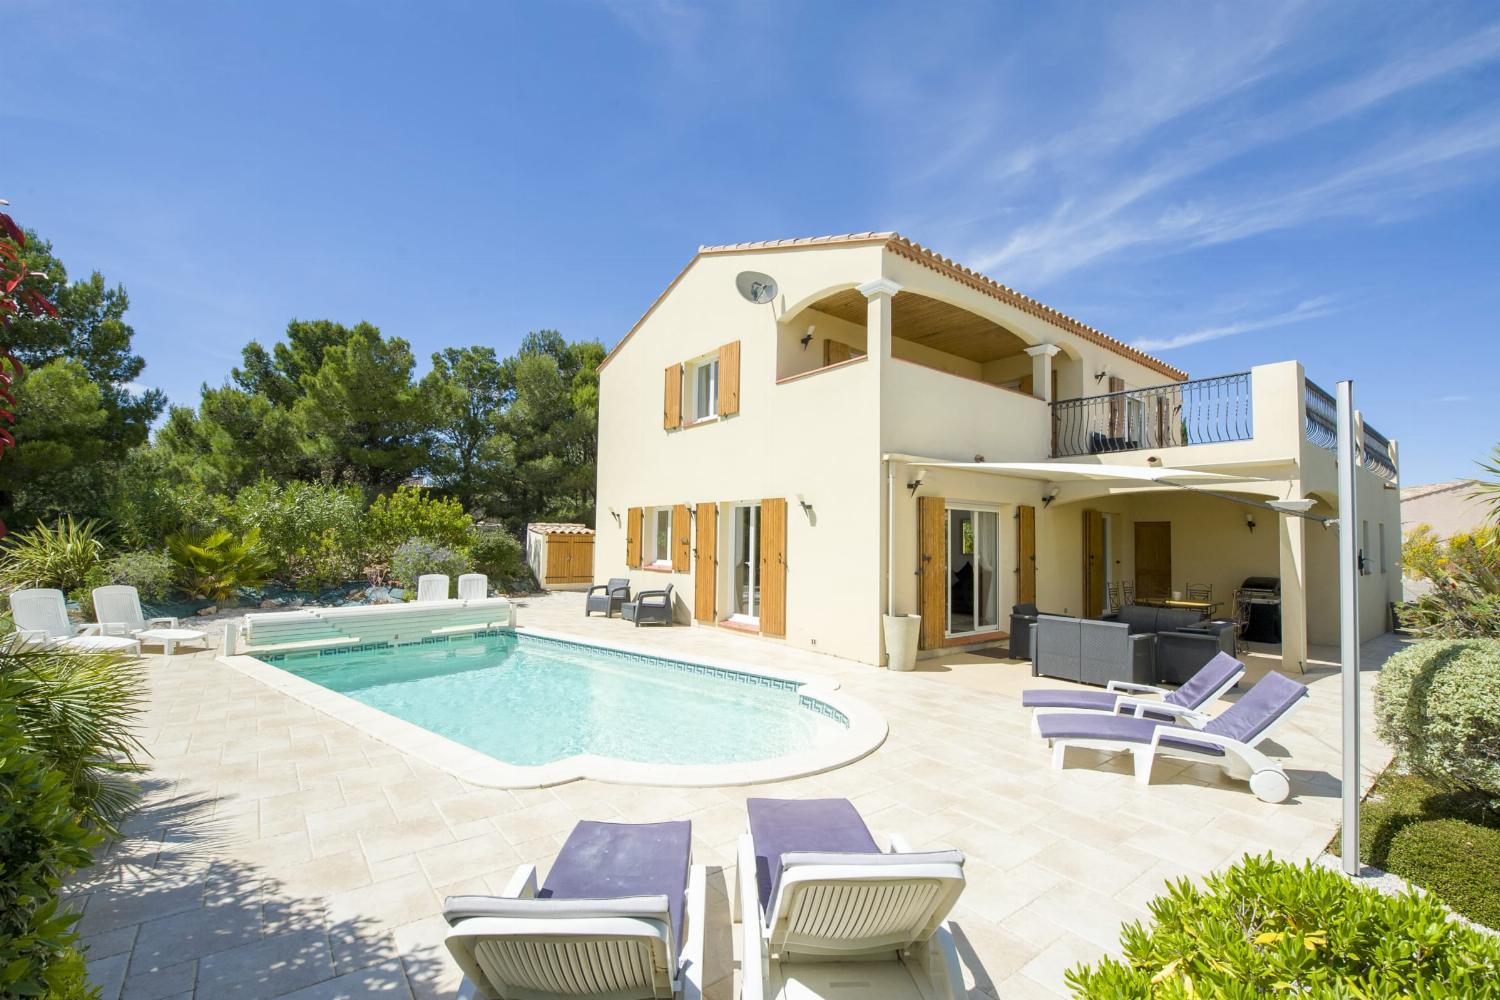 Villa de vacances dans le sud de la France avec piscine privée chauffée